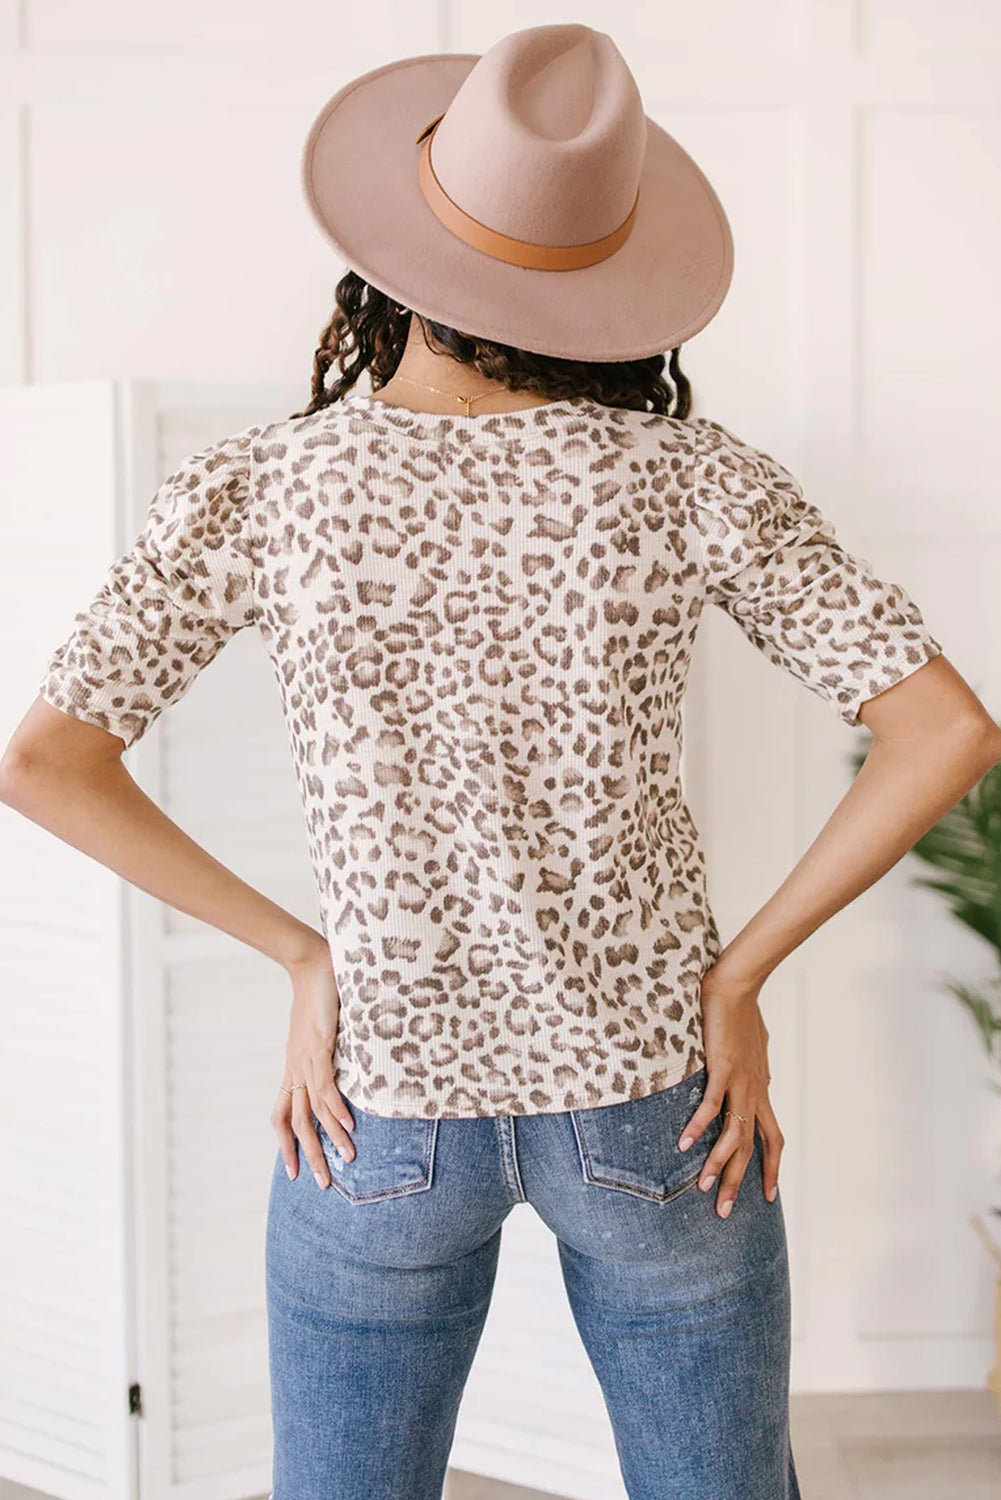 Višebojna teksturirana majica s leopard printom s naborima